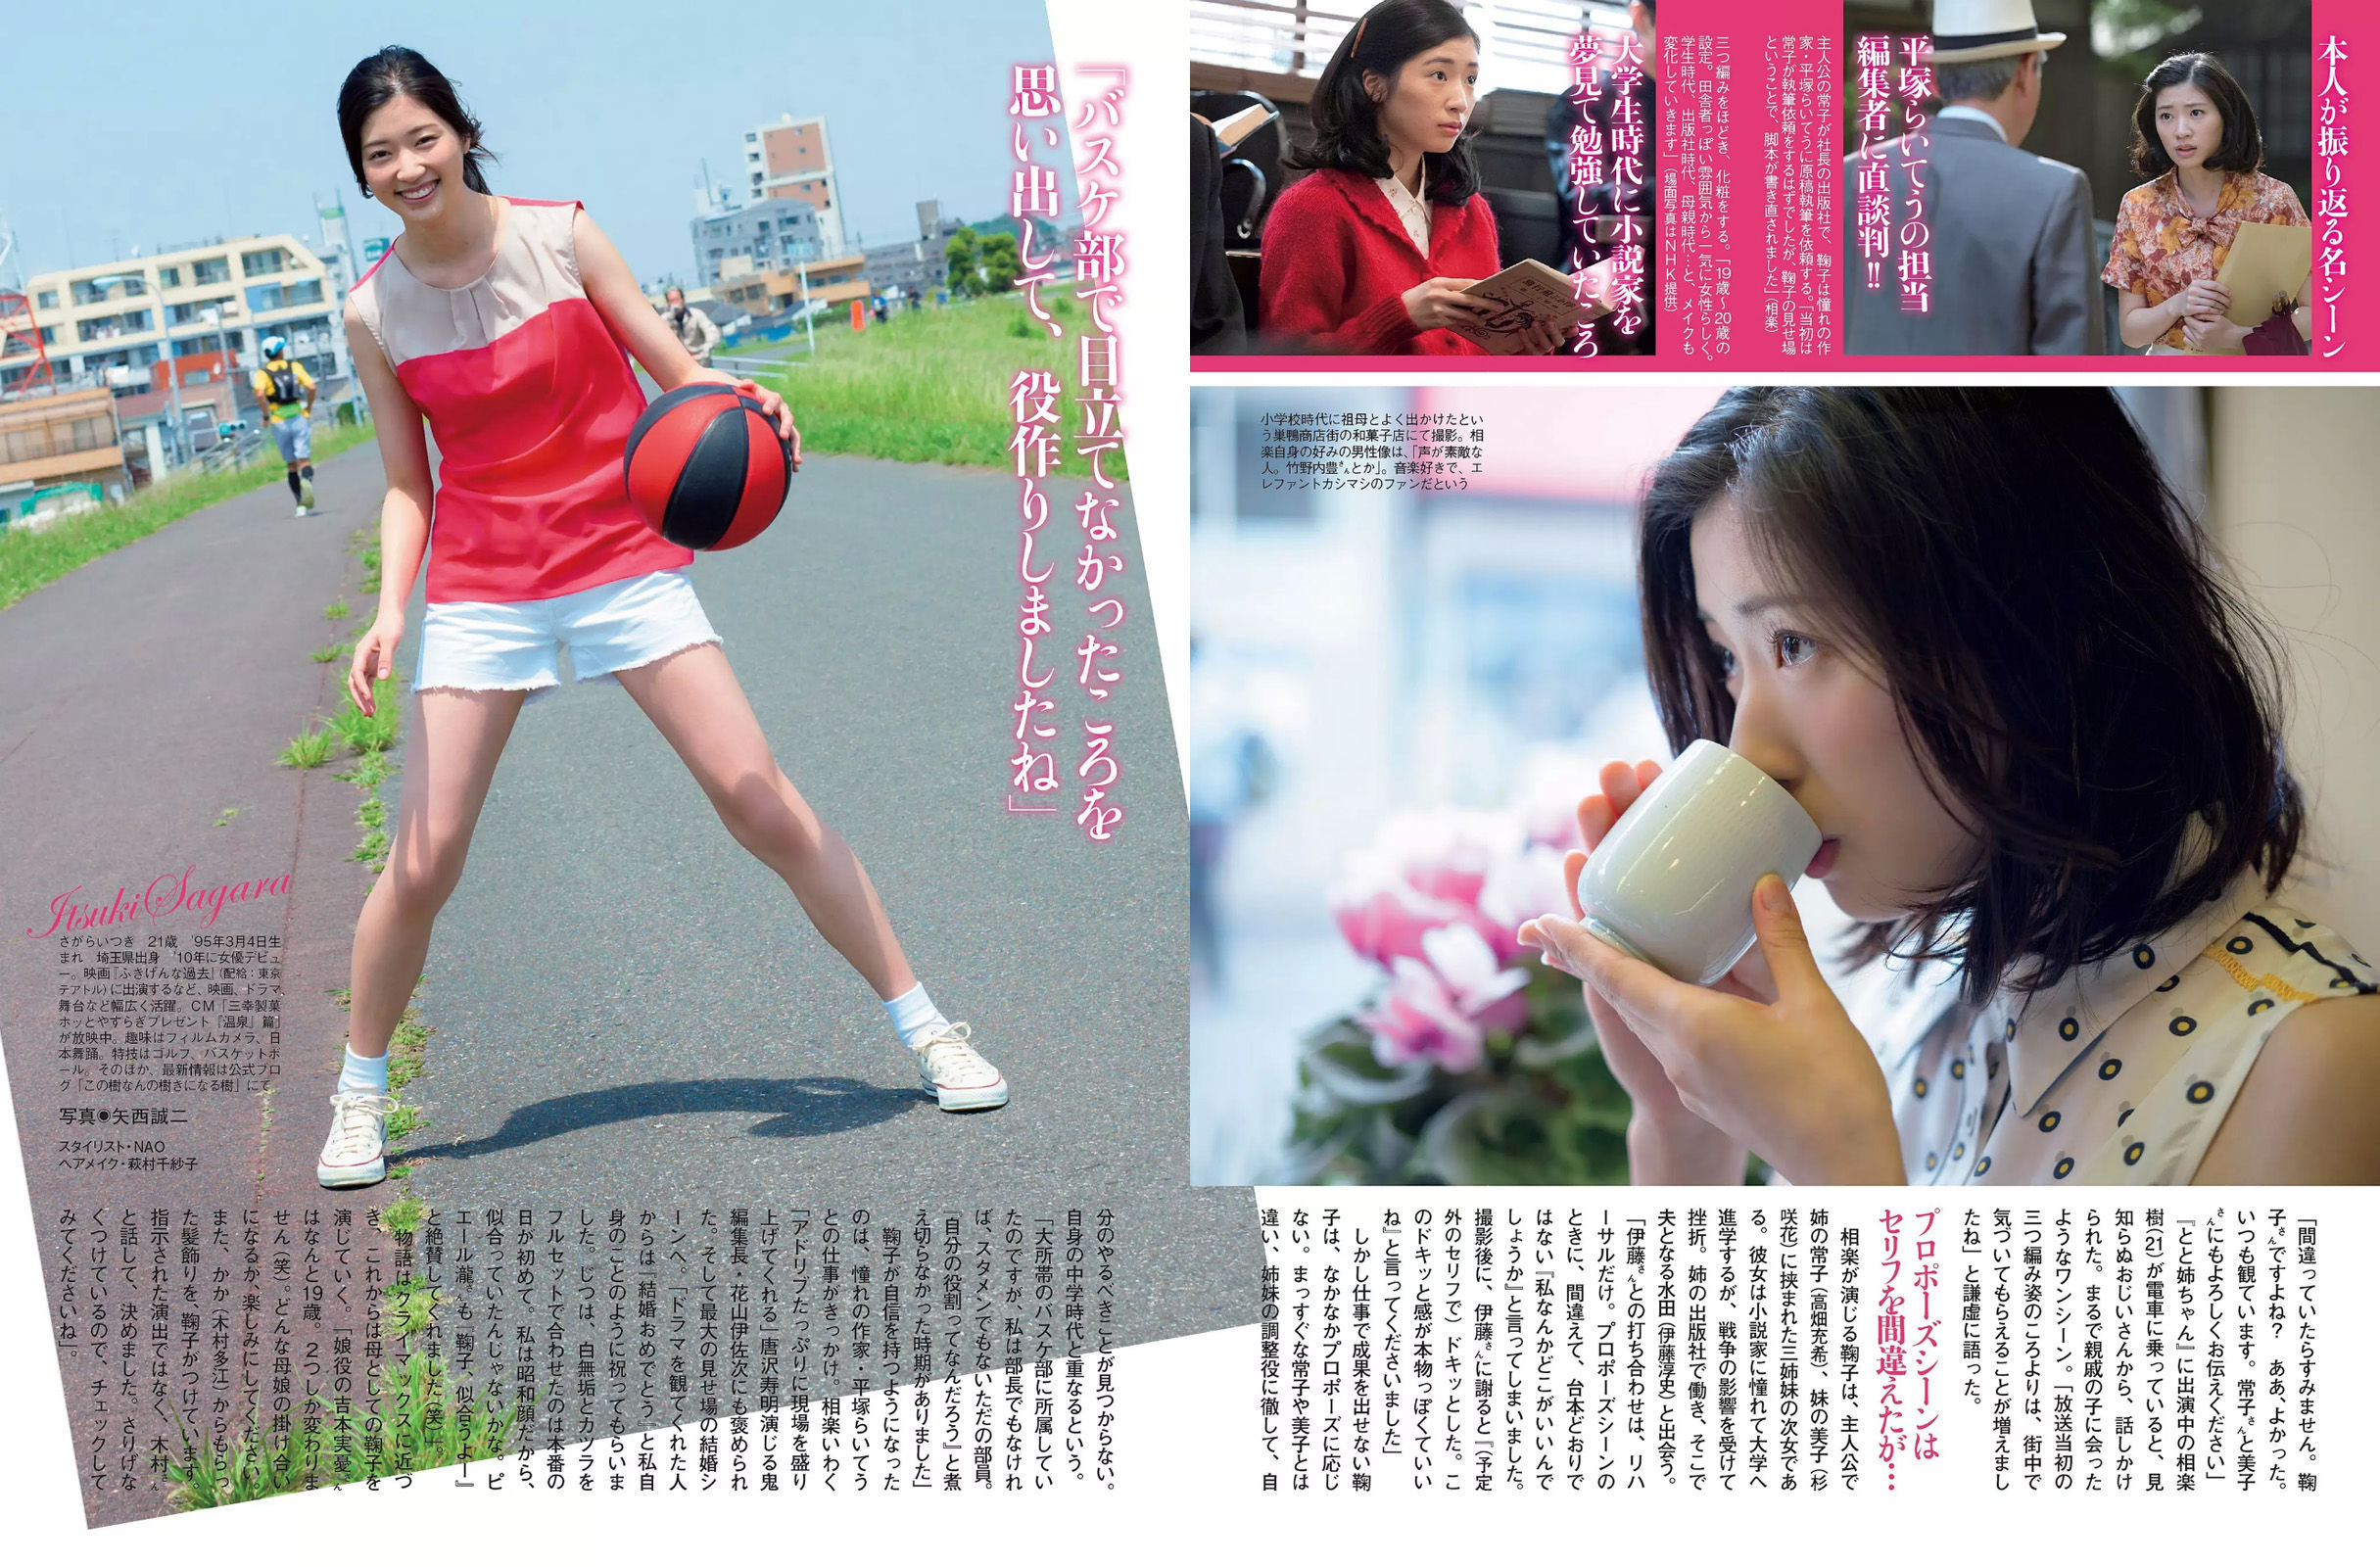 [Young Gangan] Rena Matsui Rika Tonosaki Ayaka Ohnuki 2014 No.03 Fotografia Pagina 10 No.f3ab67